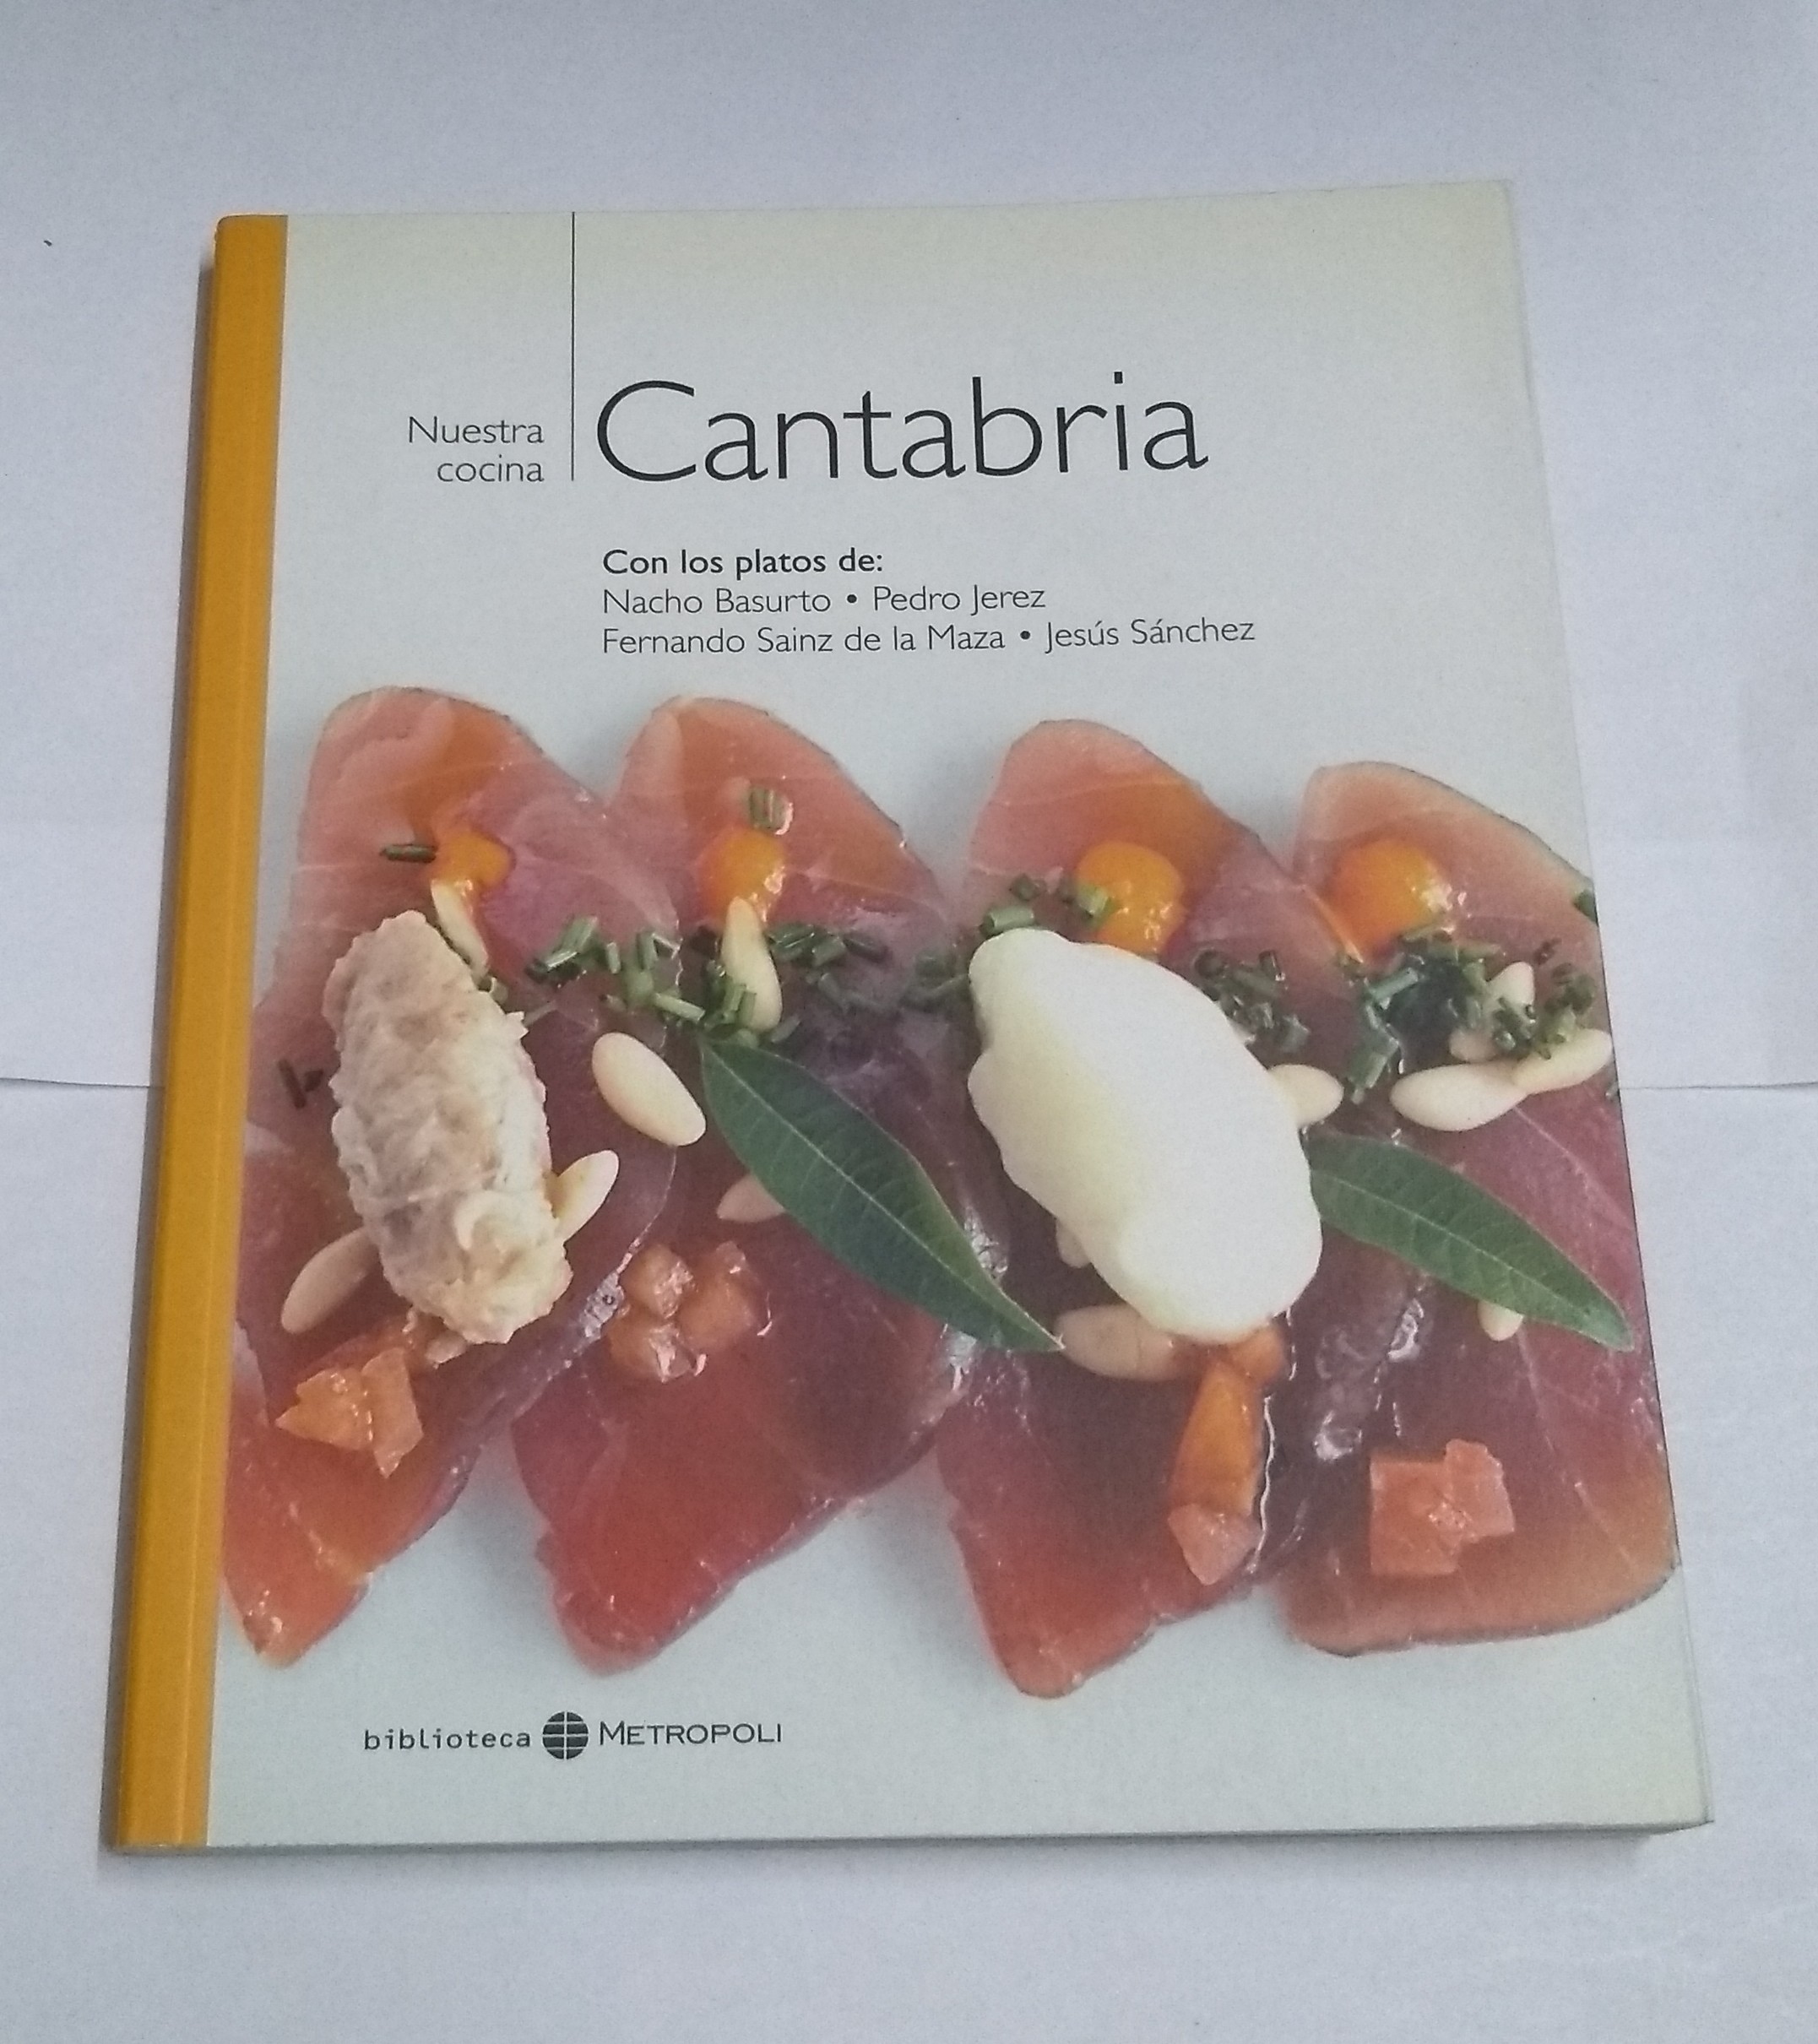 Nuestra cocina: Cantabria